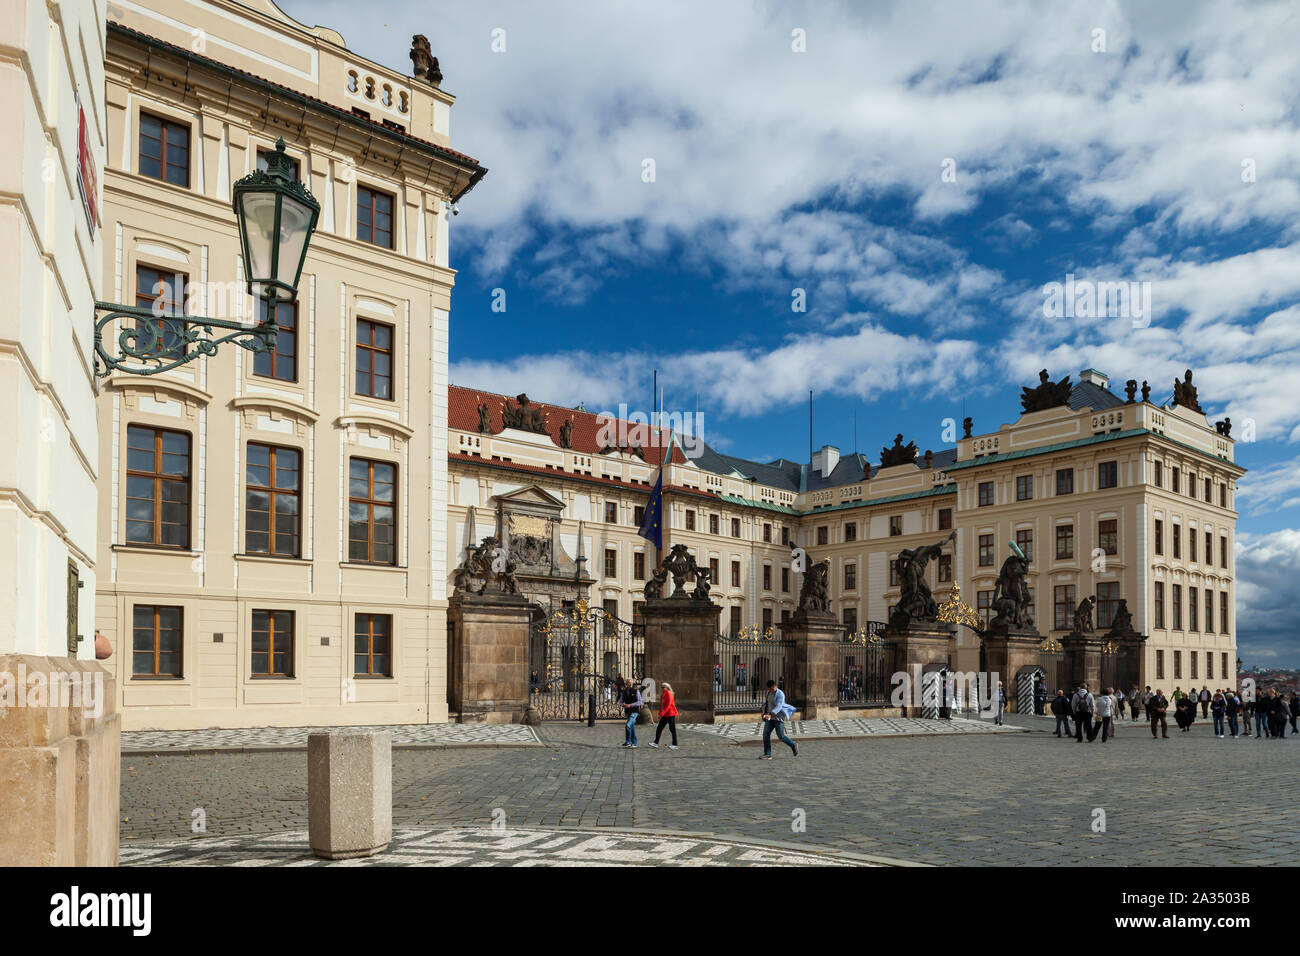 Hradcany square in Prague, Czechia. Stock Photo